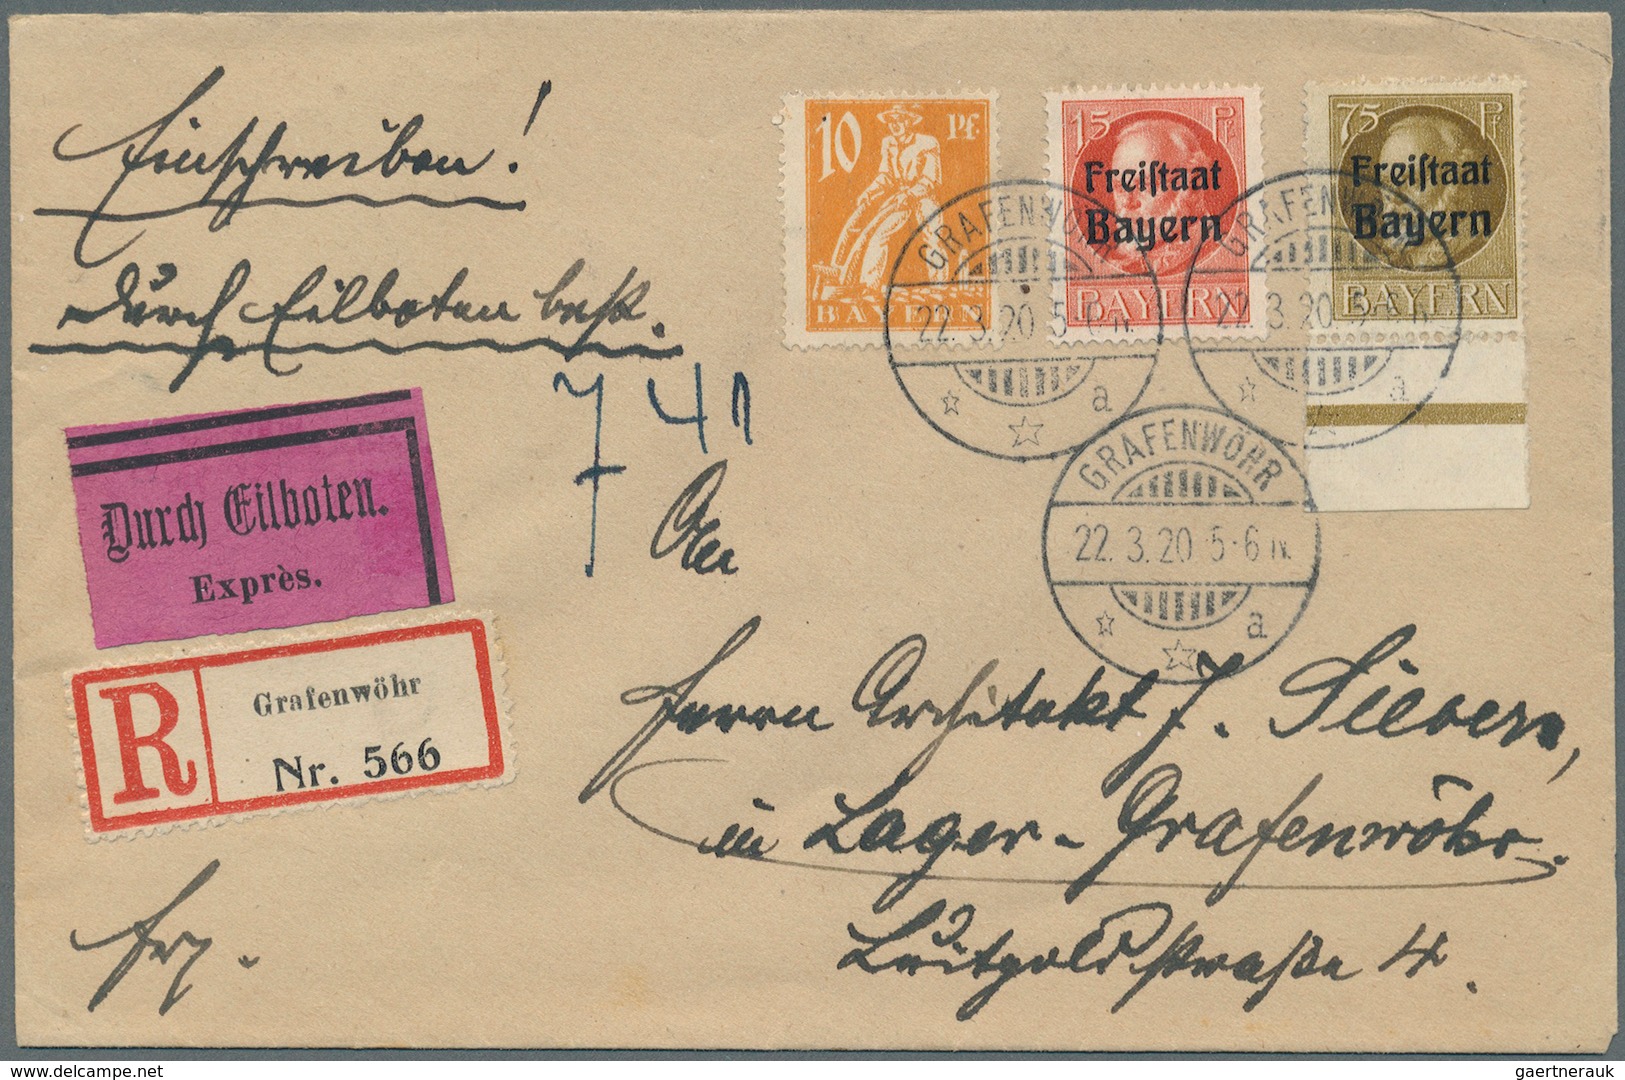 31208 Bayern - Marken und Briefe: 1911/1920, Luitpold, Ludwig und sonstige Ausgaben, überwiegend Einzel-,